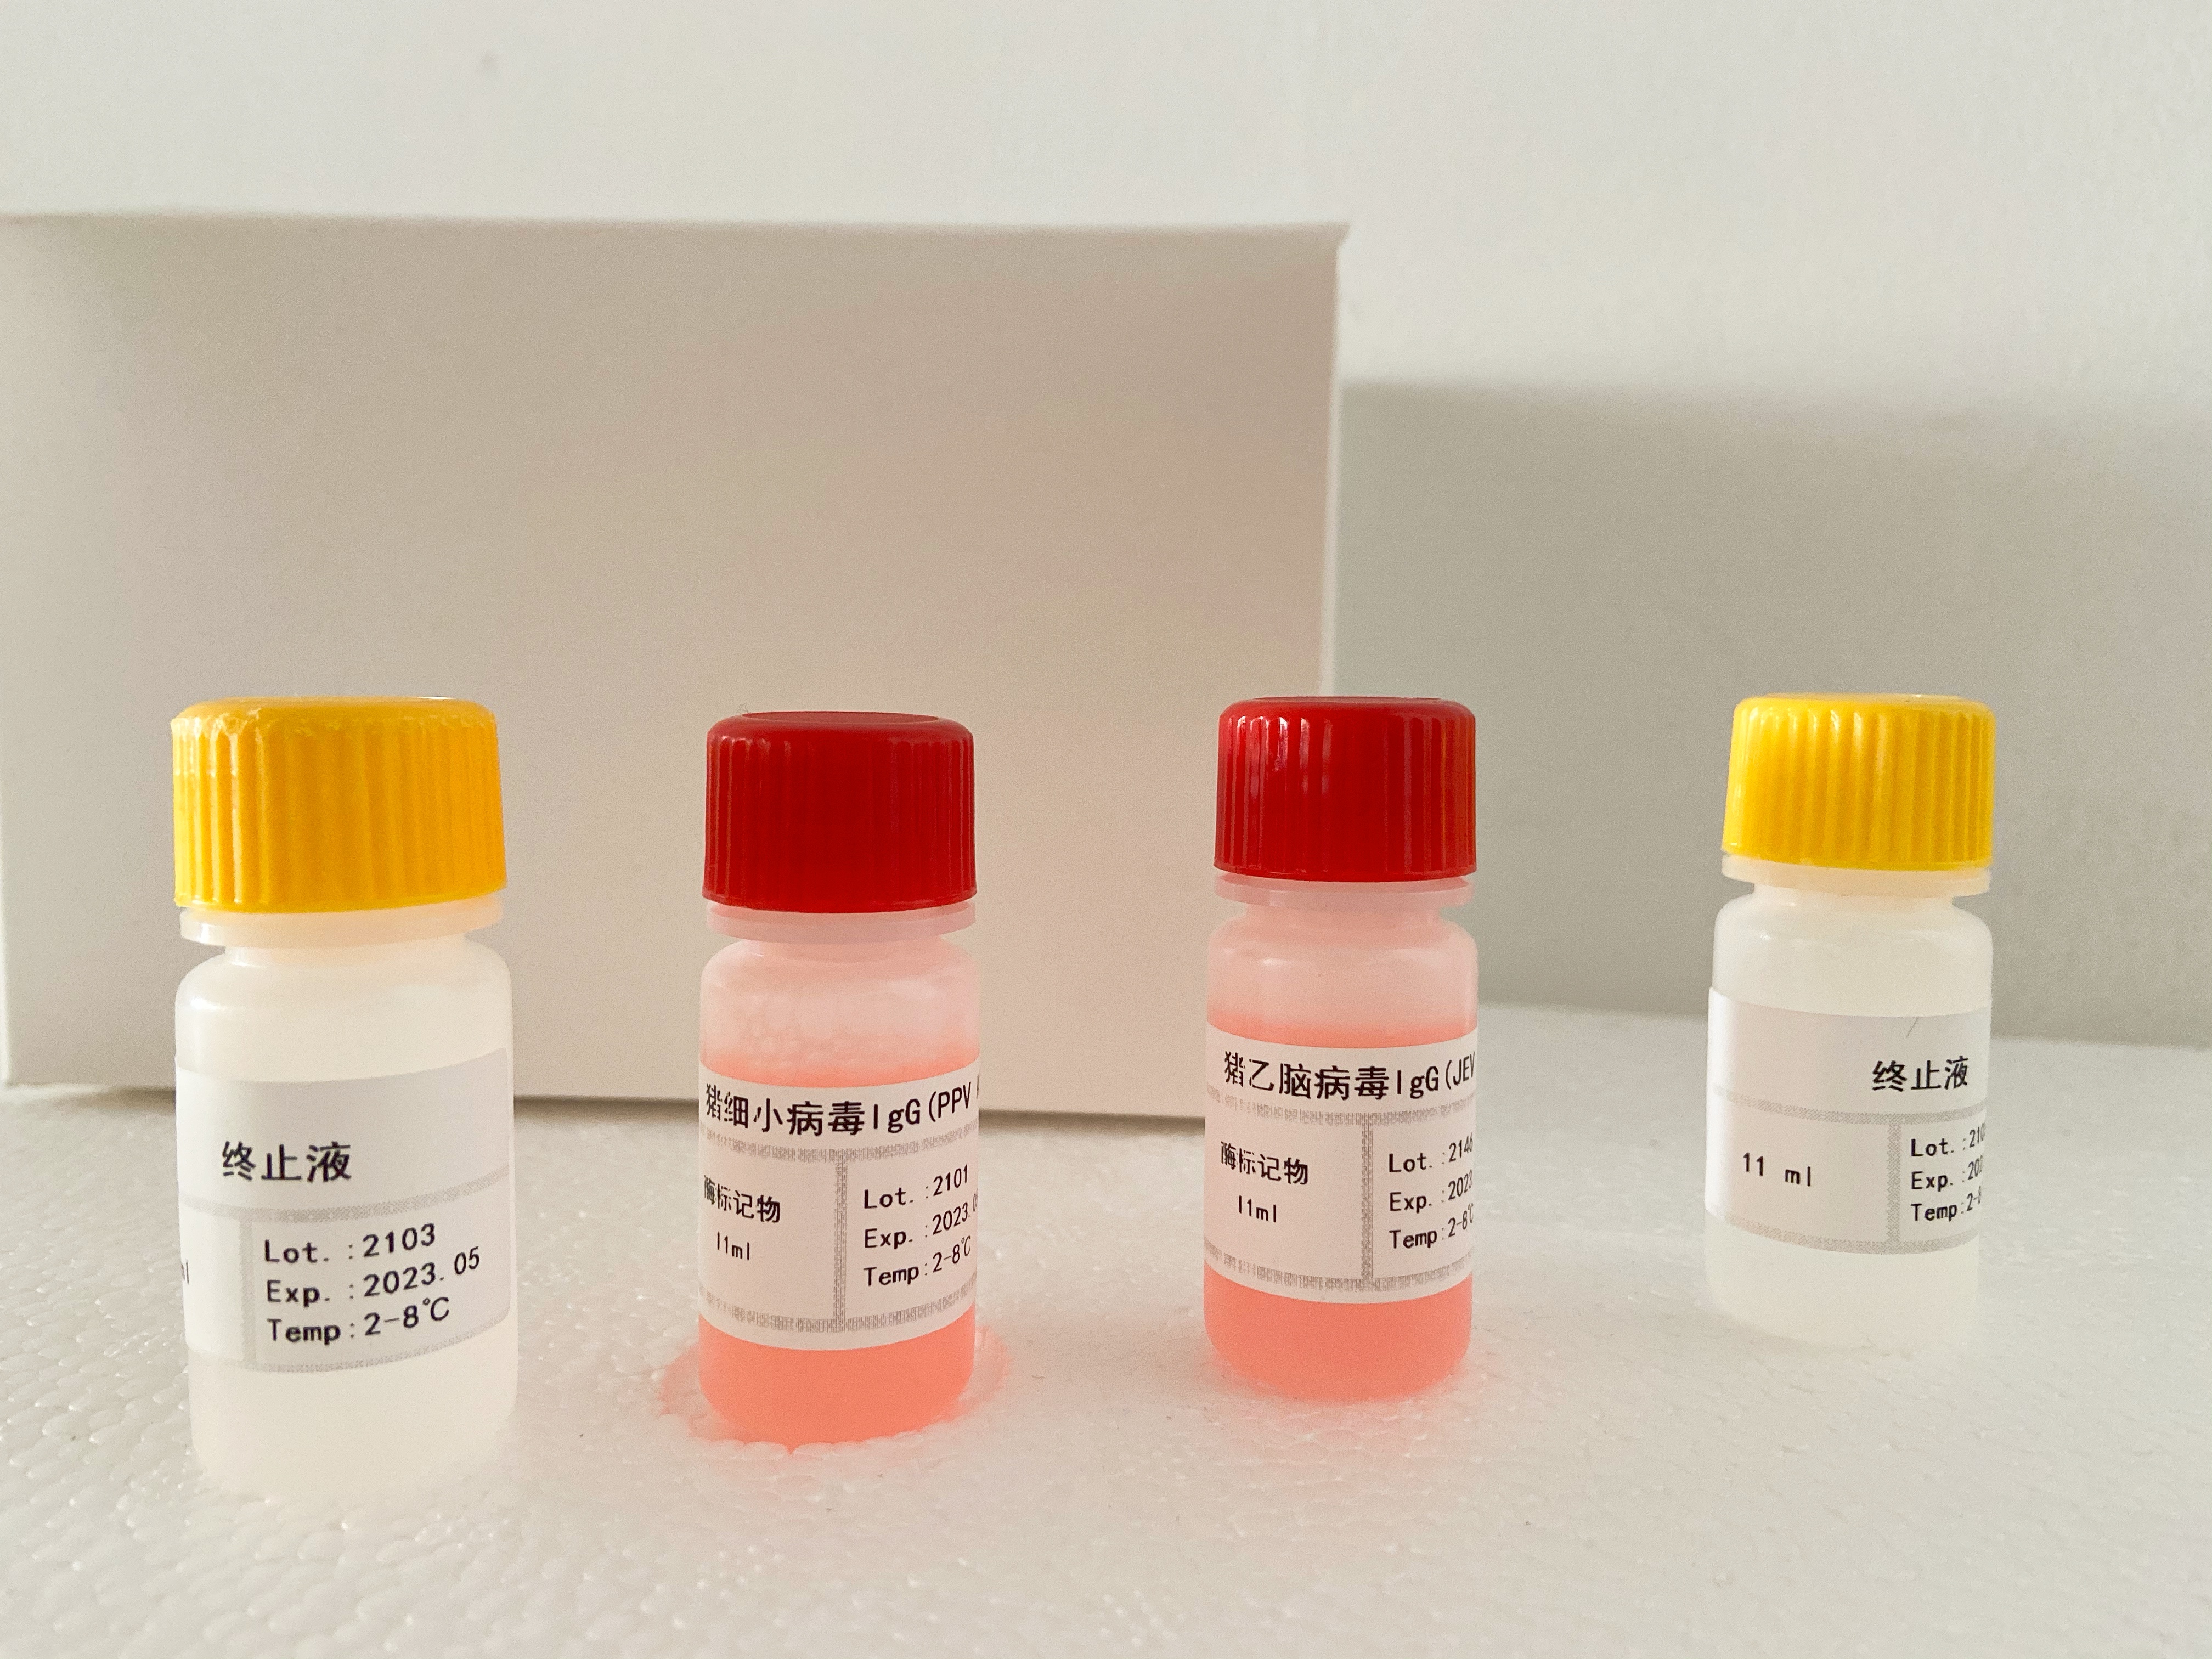 小鼠胆囊收缩素/肠促胰酶肽(CCK)检测试剂盒